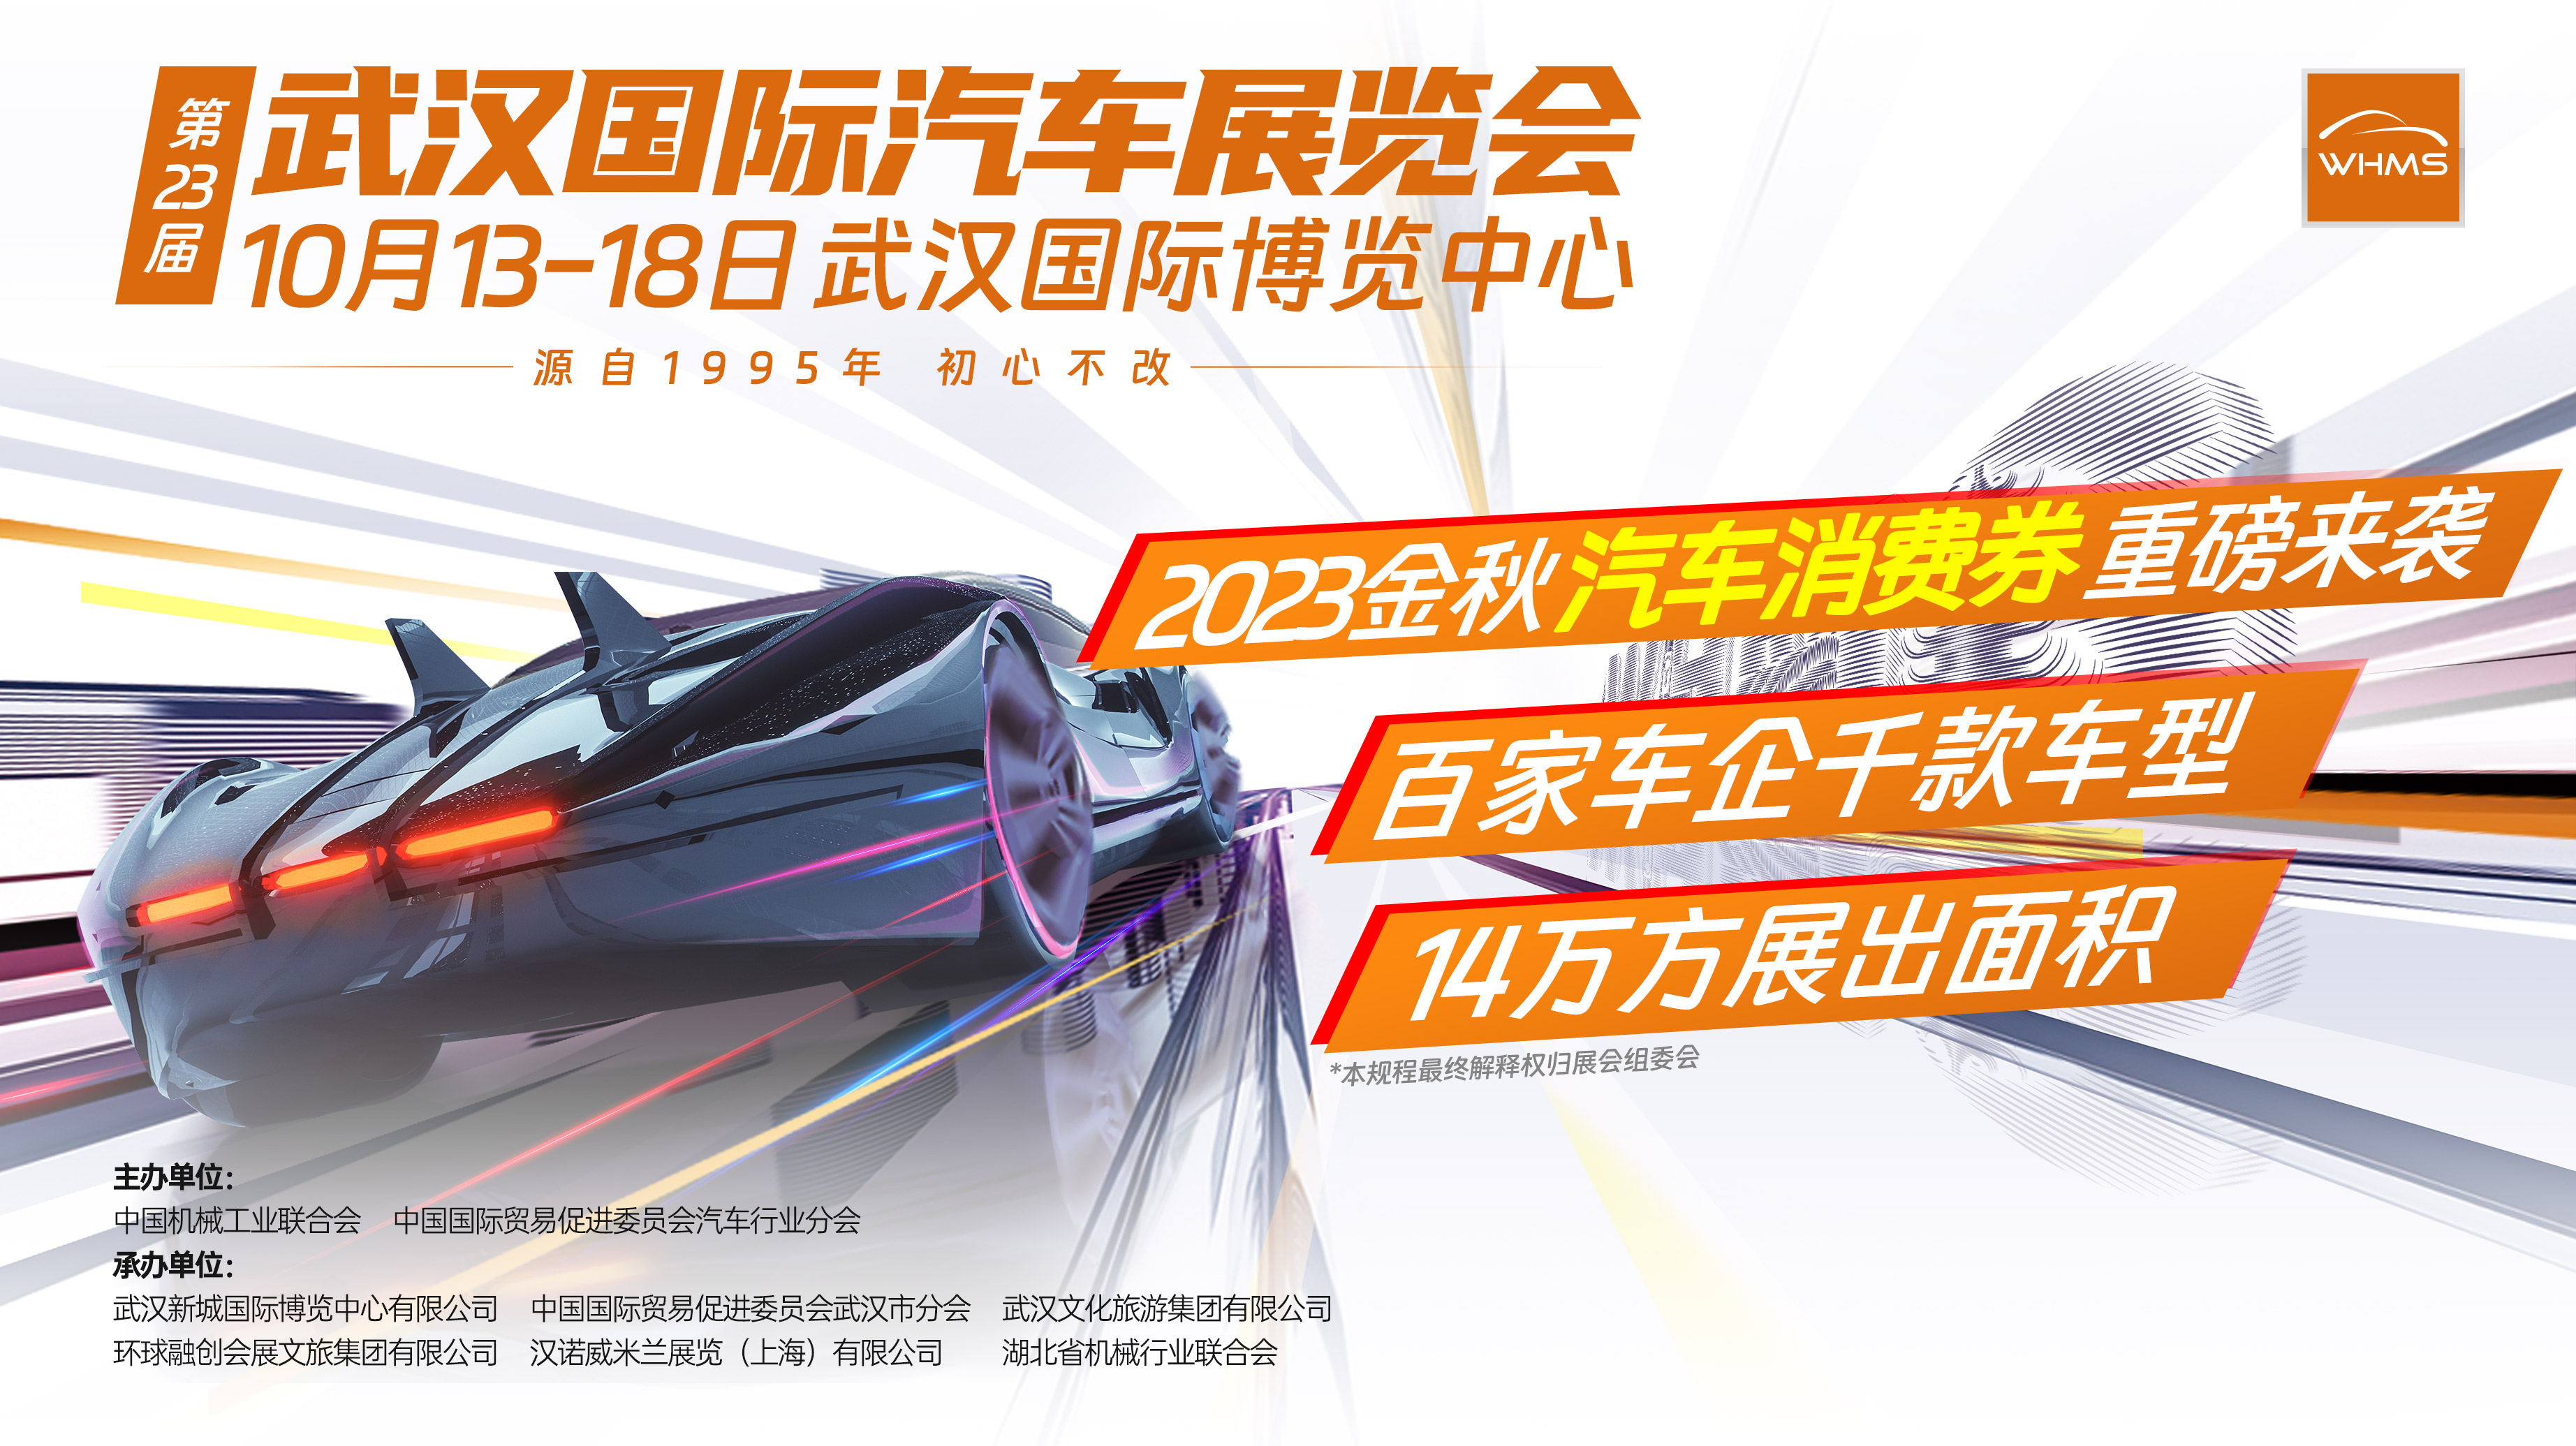 武汉国际汽车展览会将于10月13-18日在武汉国际博览中心盛大开幕